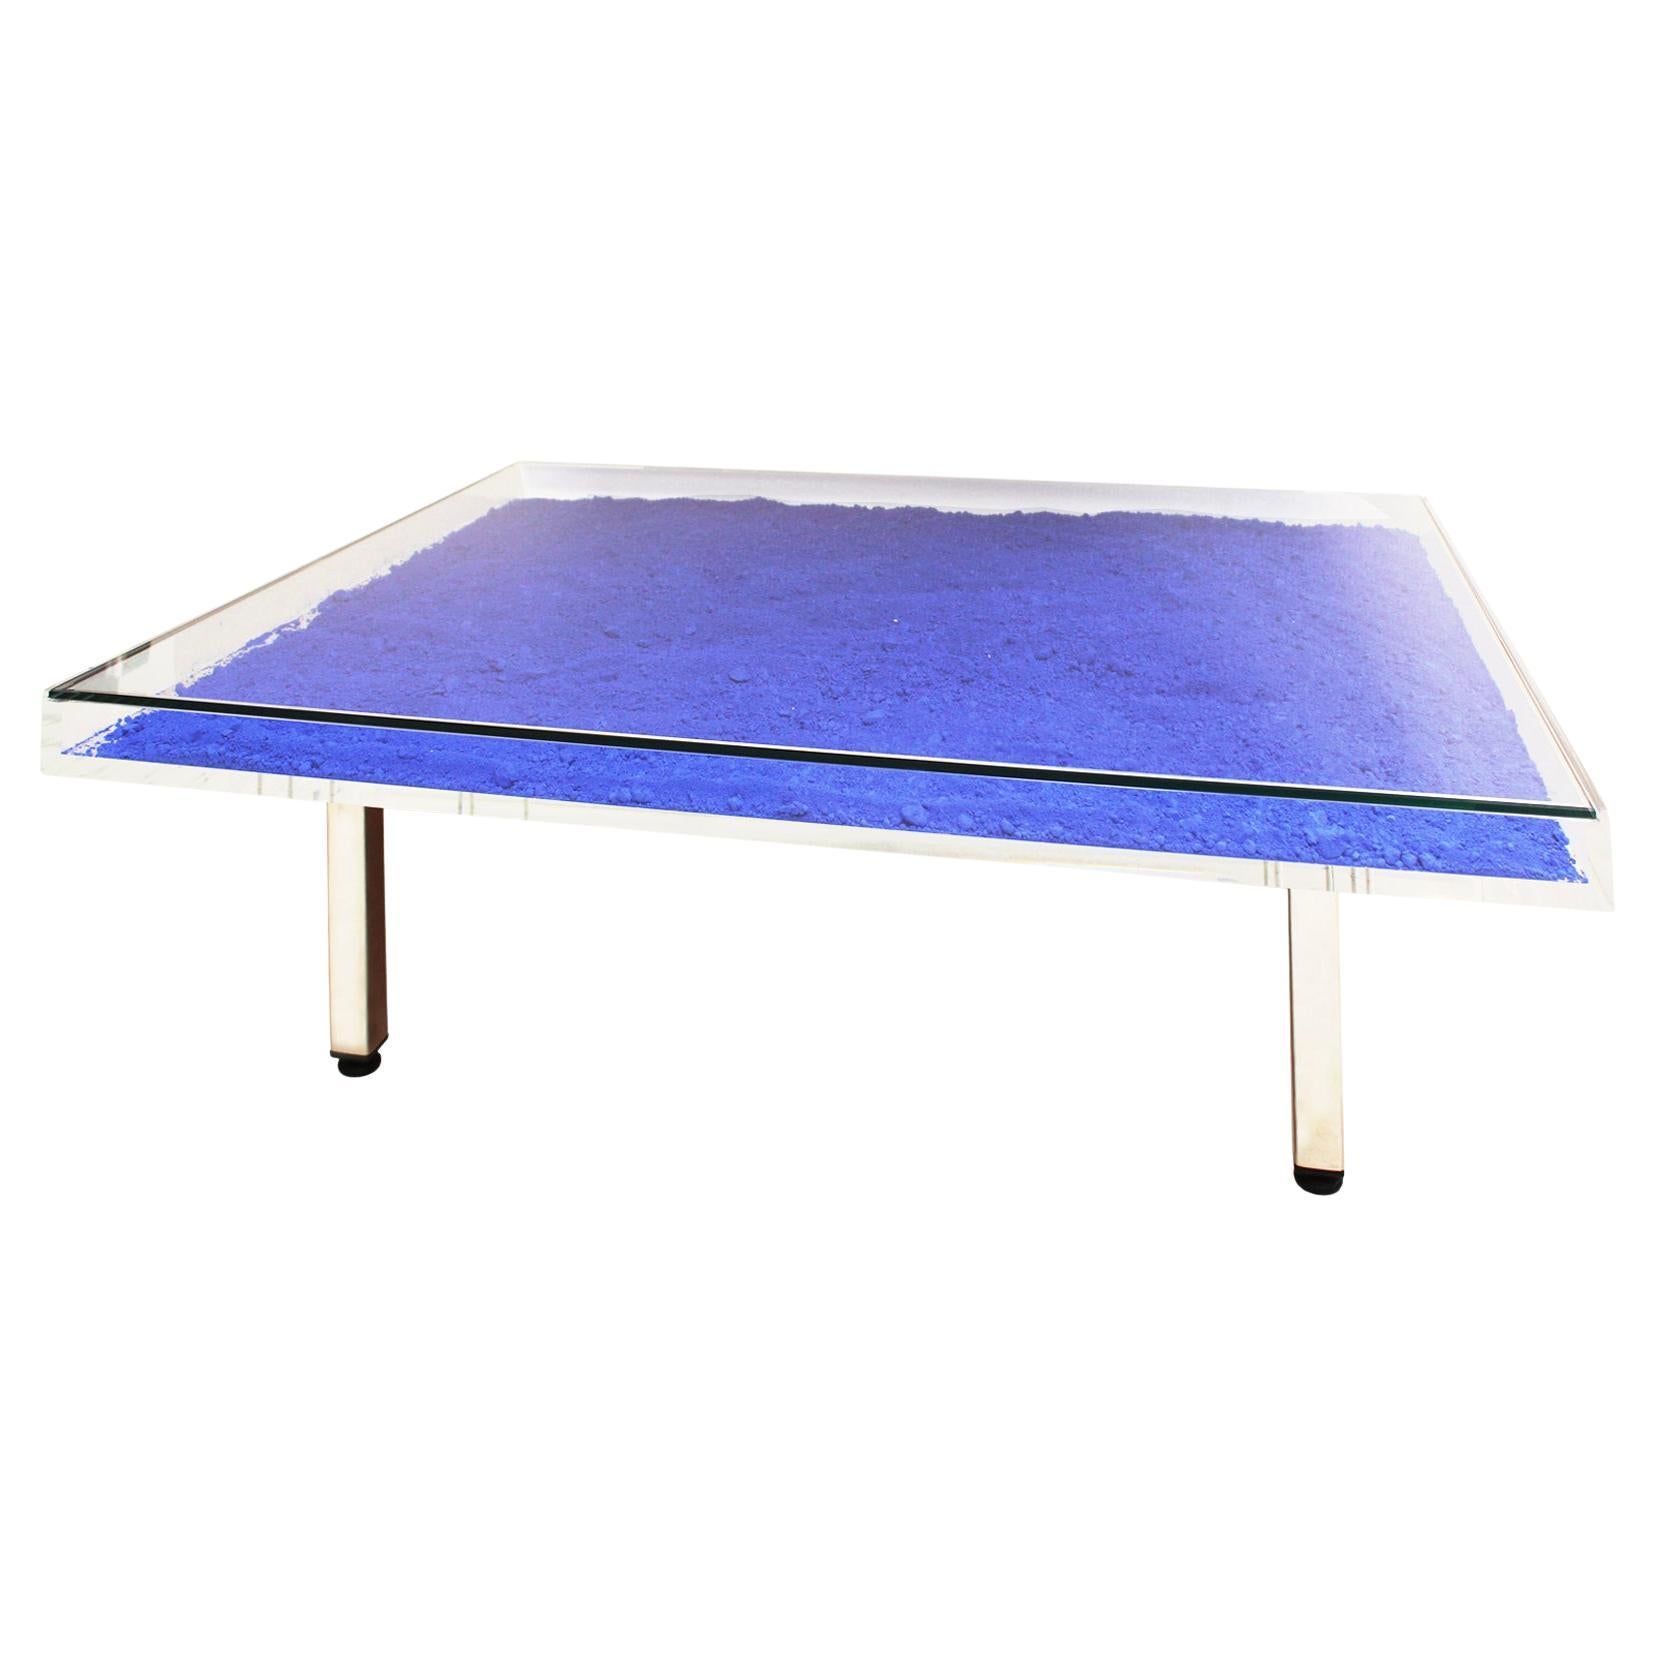 Table basse carrée française contemporaine bleue Mod Klein d'Yves Klein 